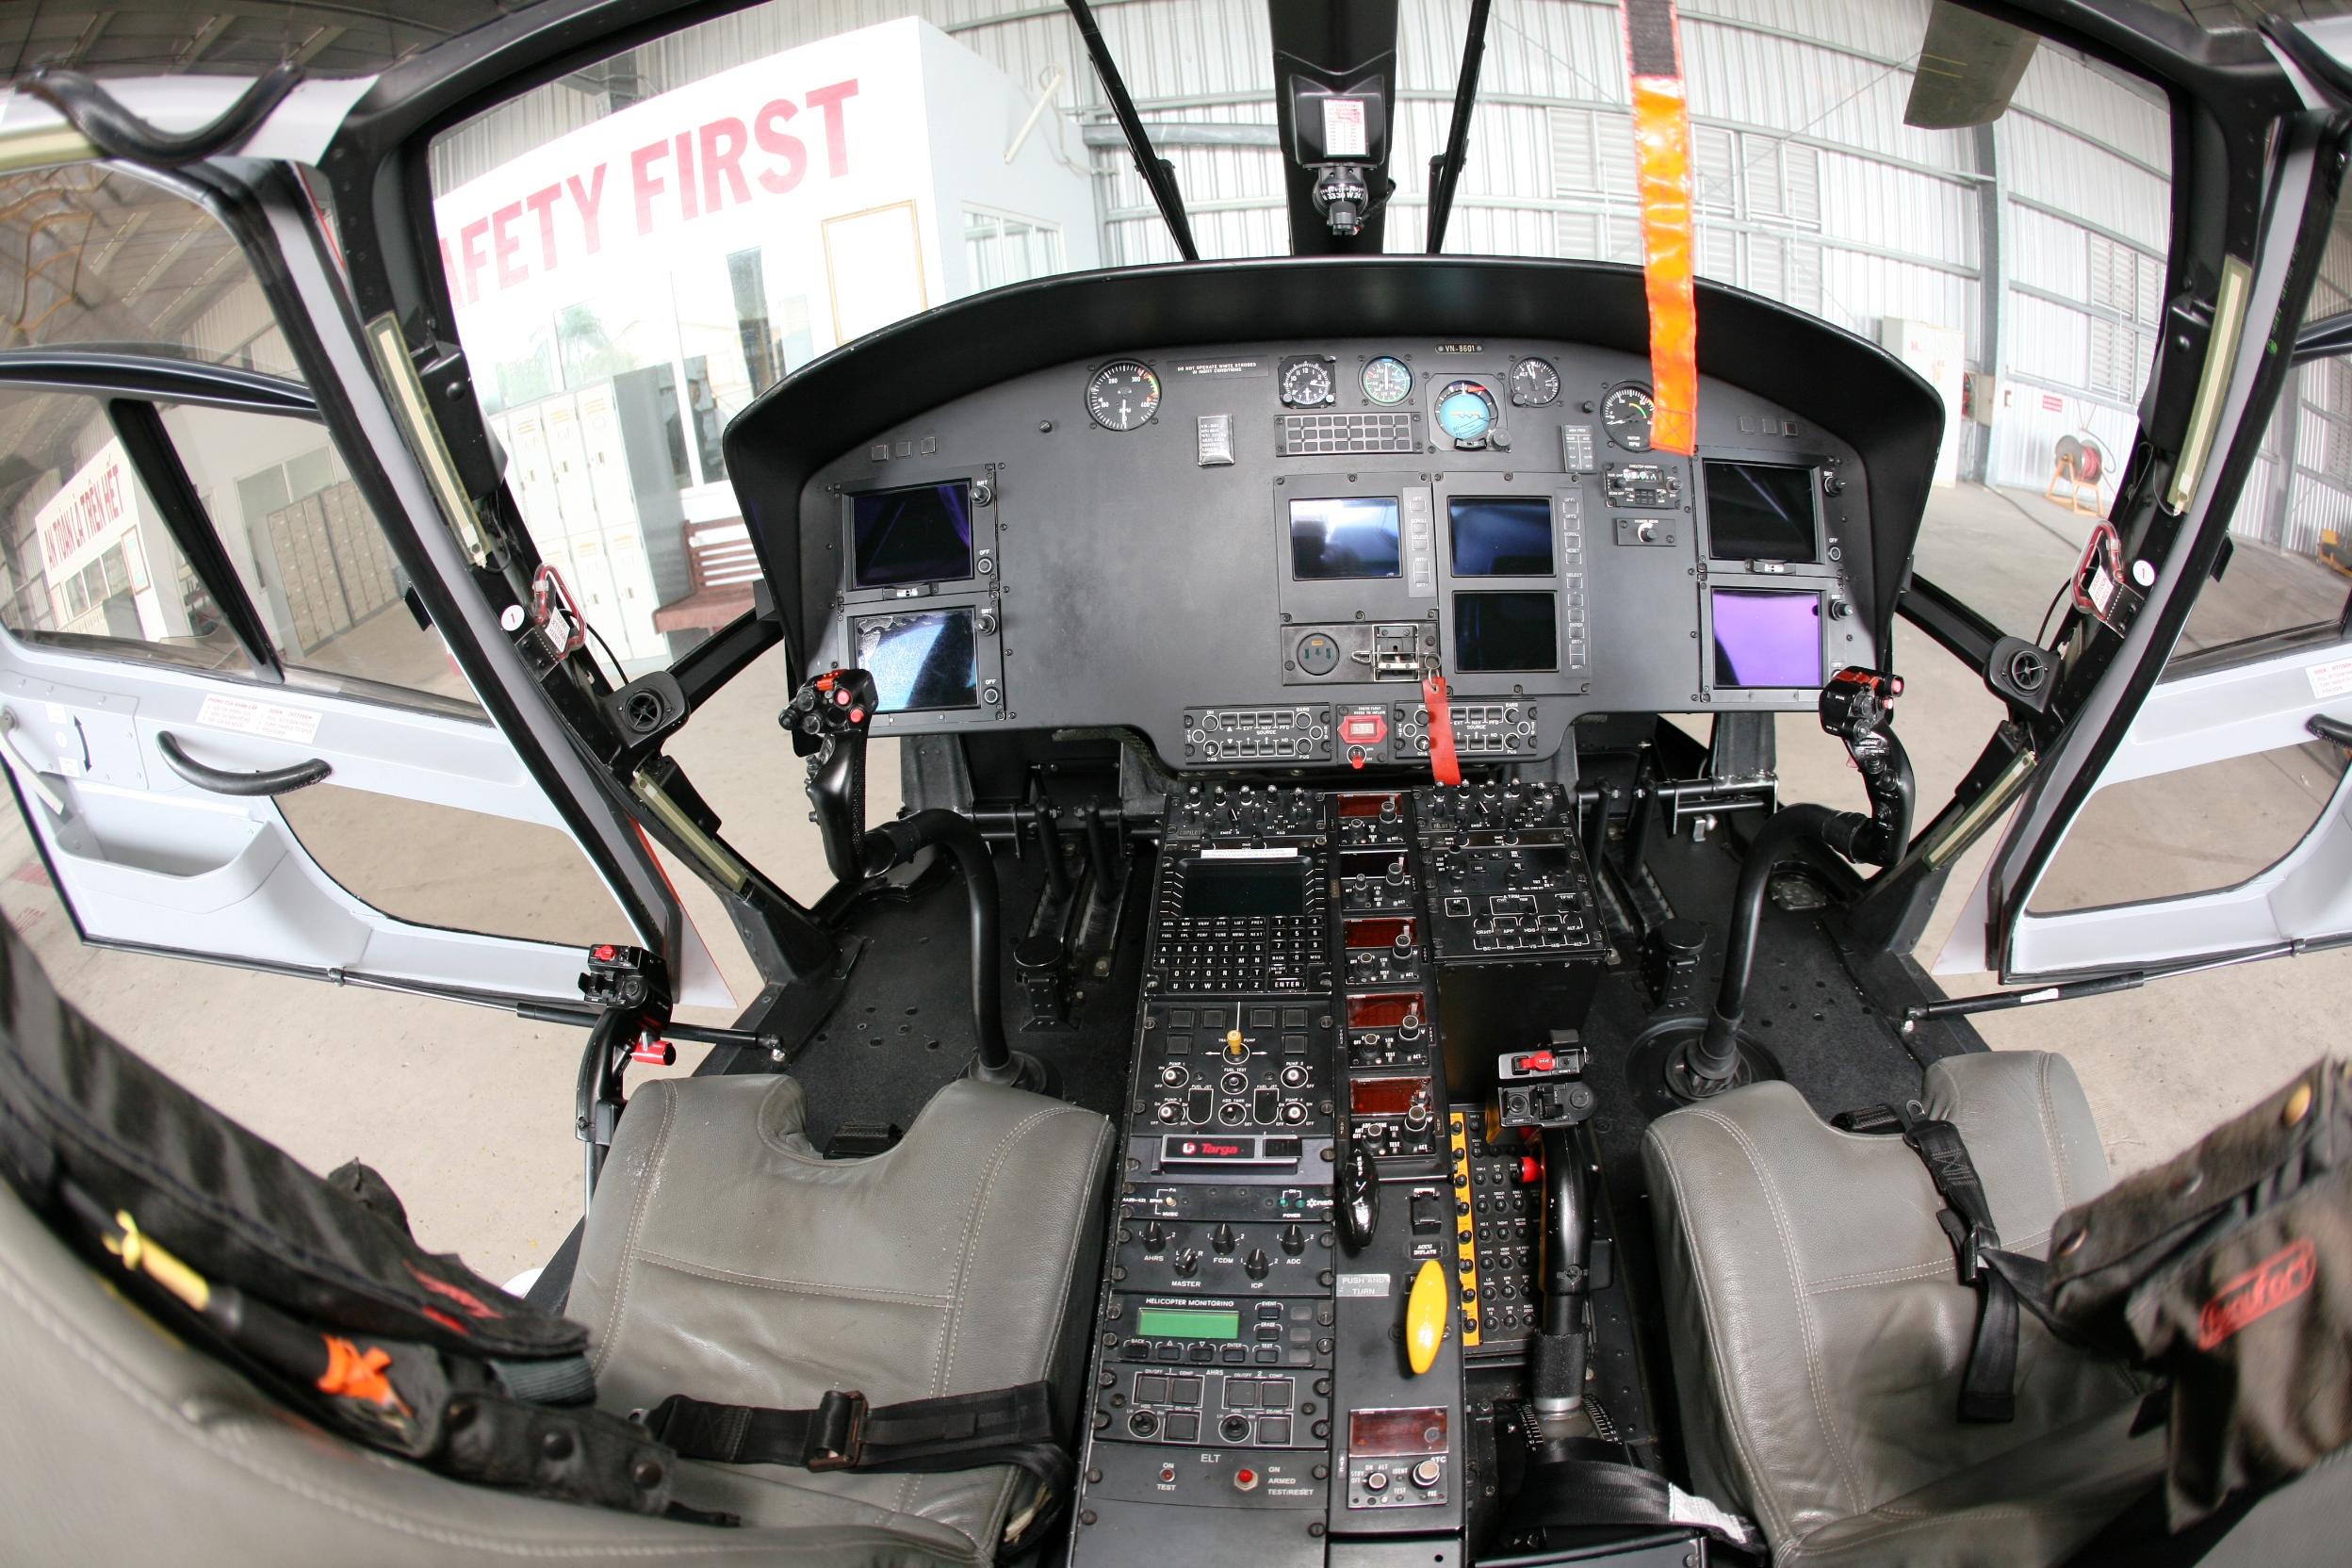 Khoang buồng lái trực thăng EC-155 B1